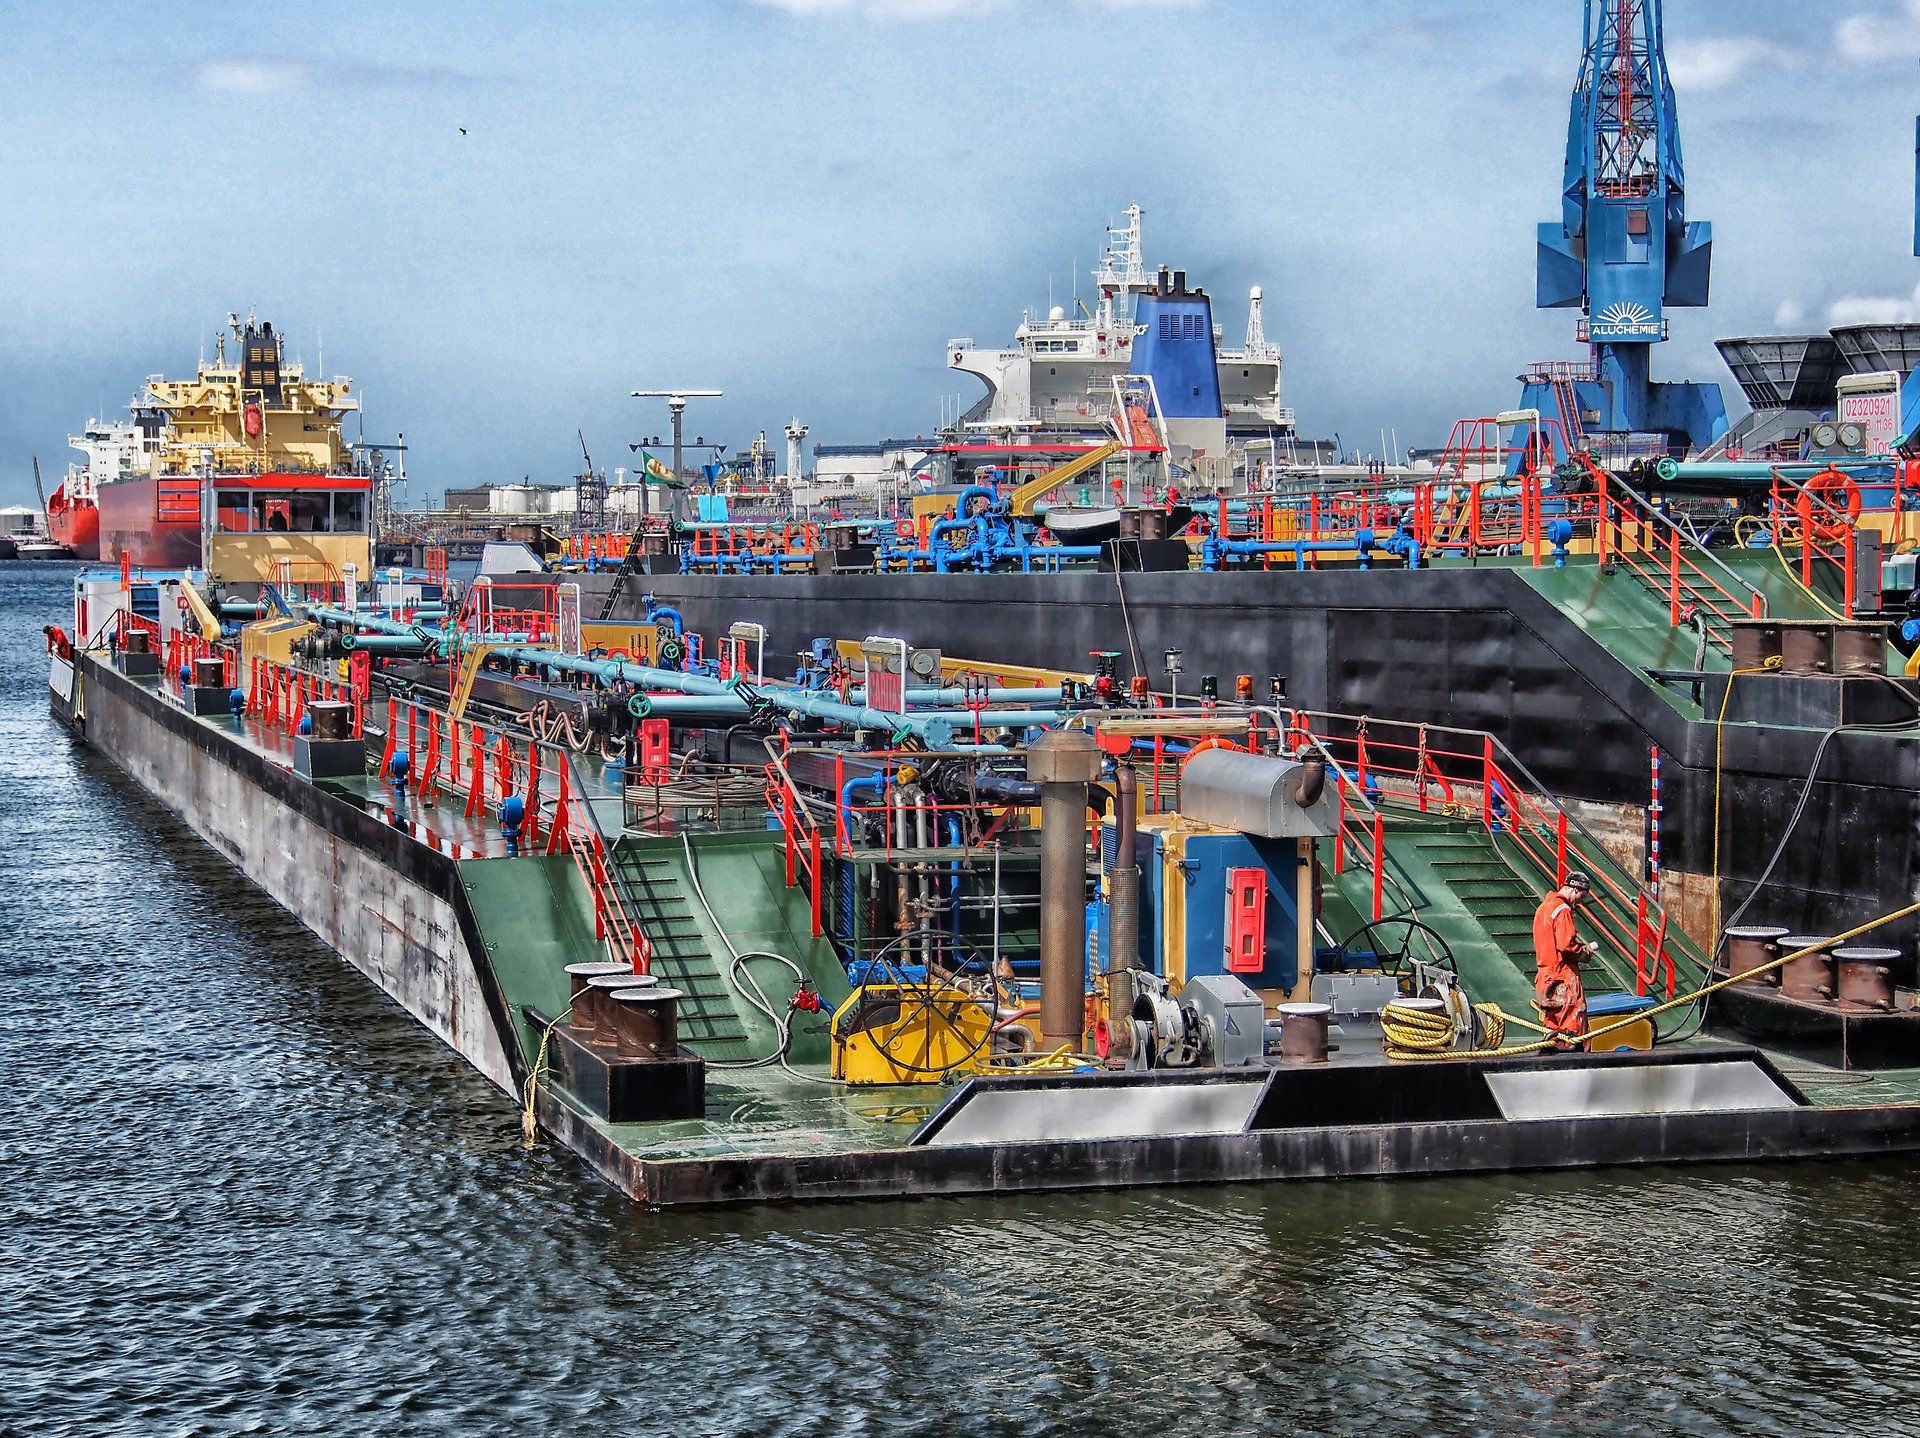 Le port de Rotterdam, porte d'entrée de la drogue
Crédit : Pixabay